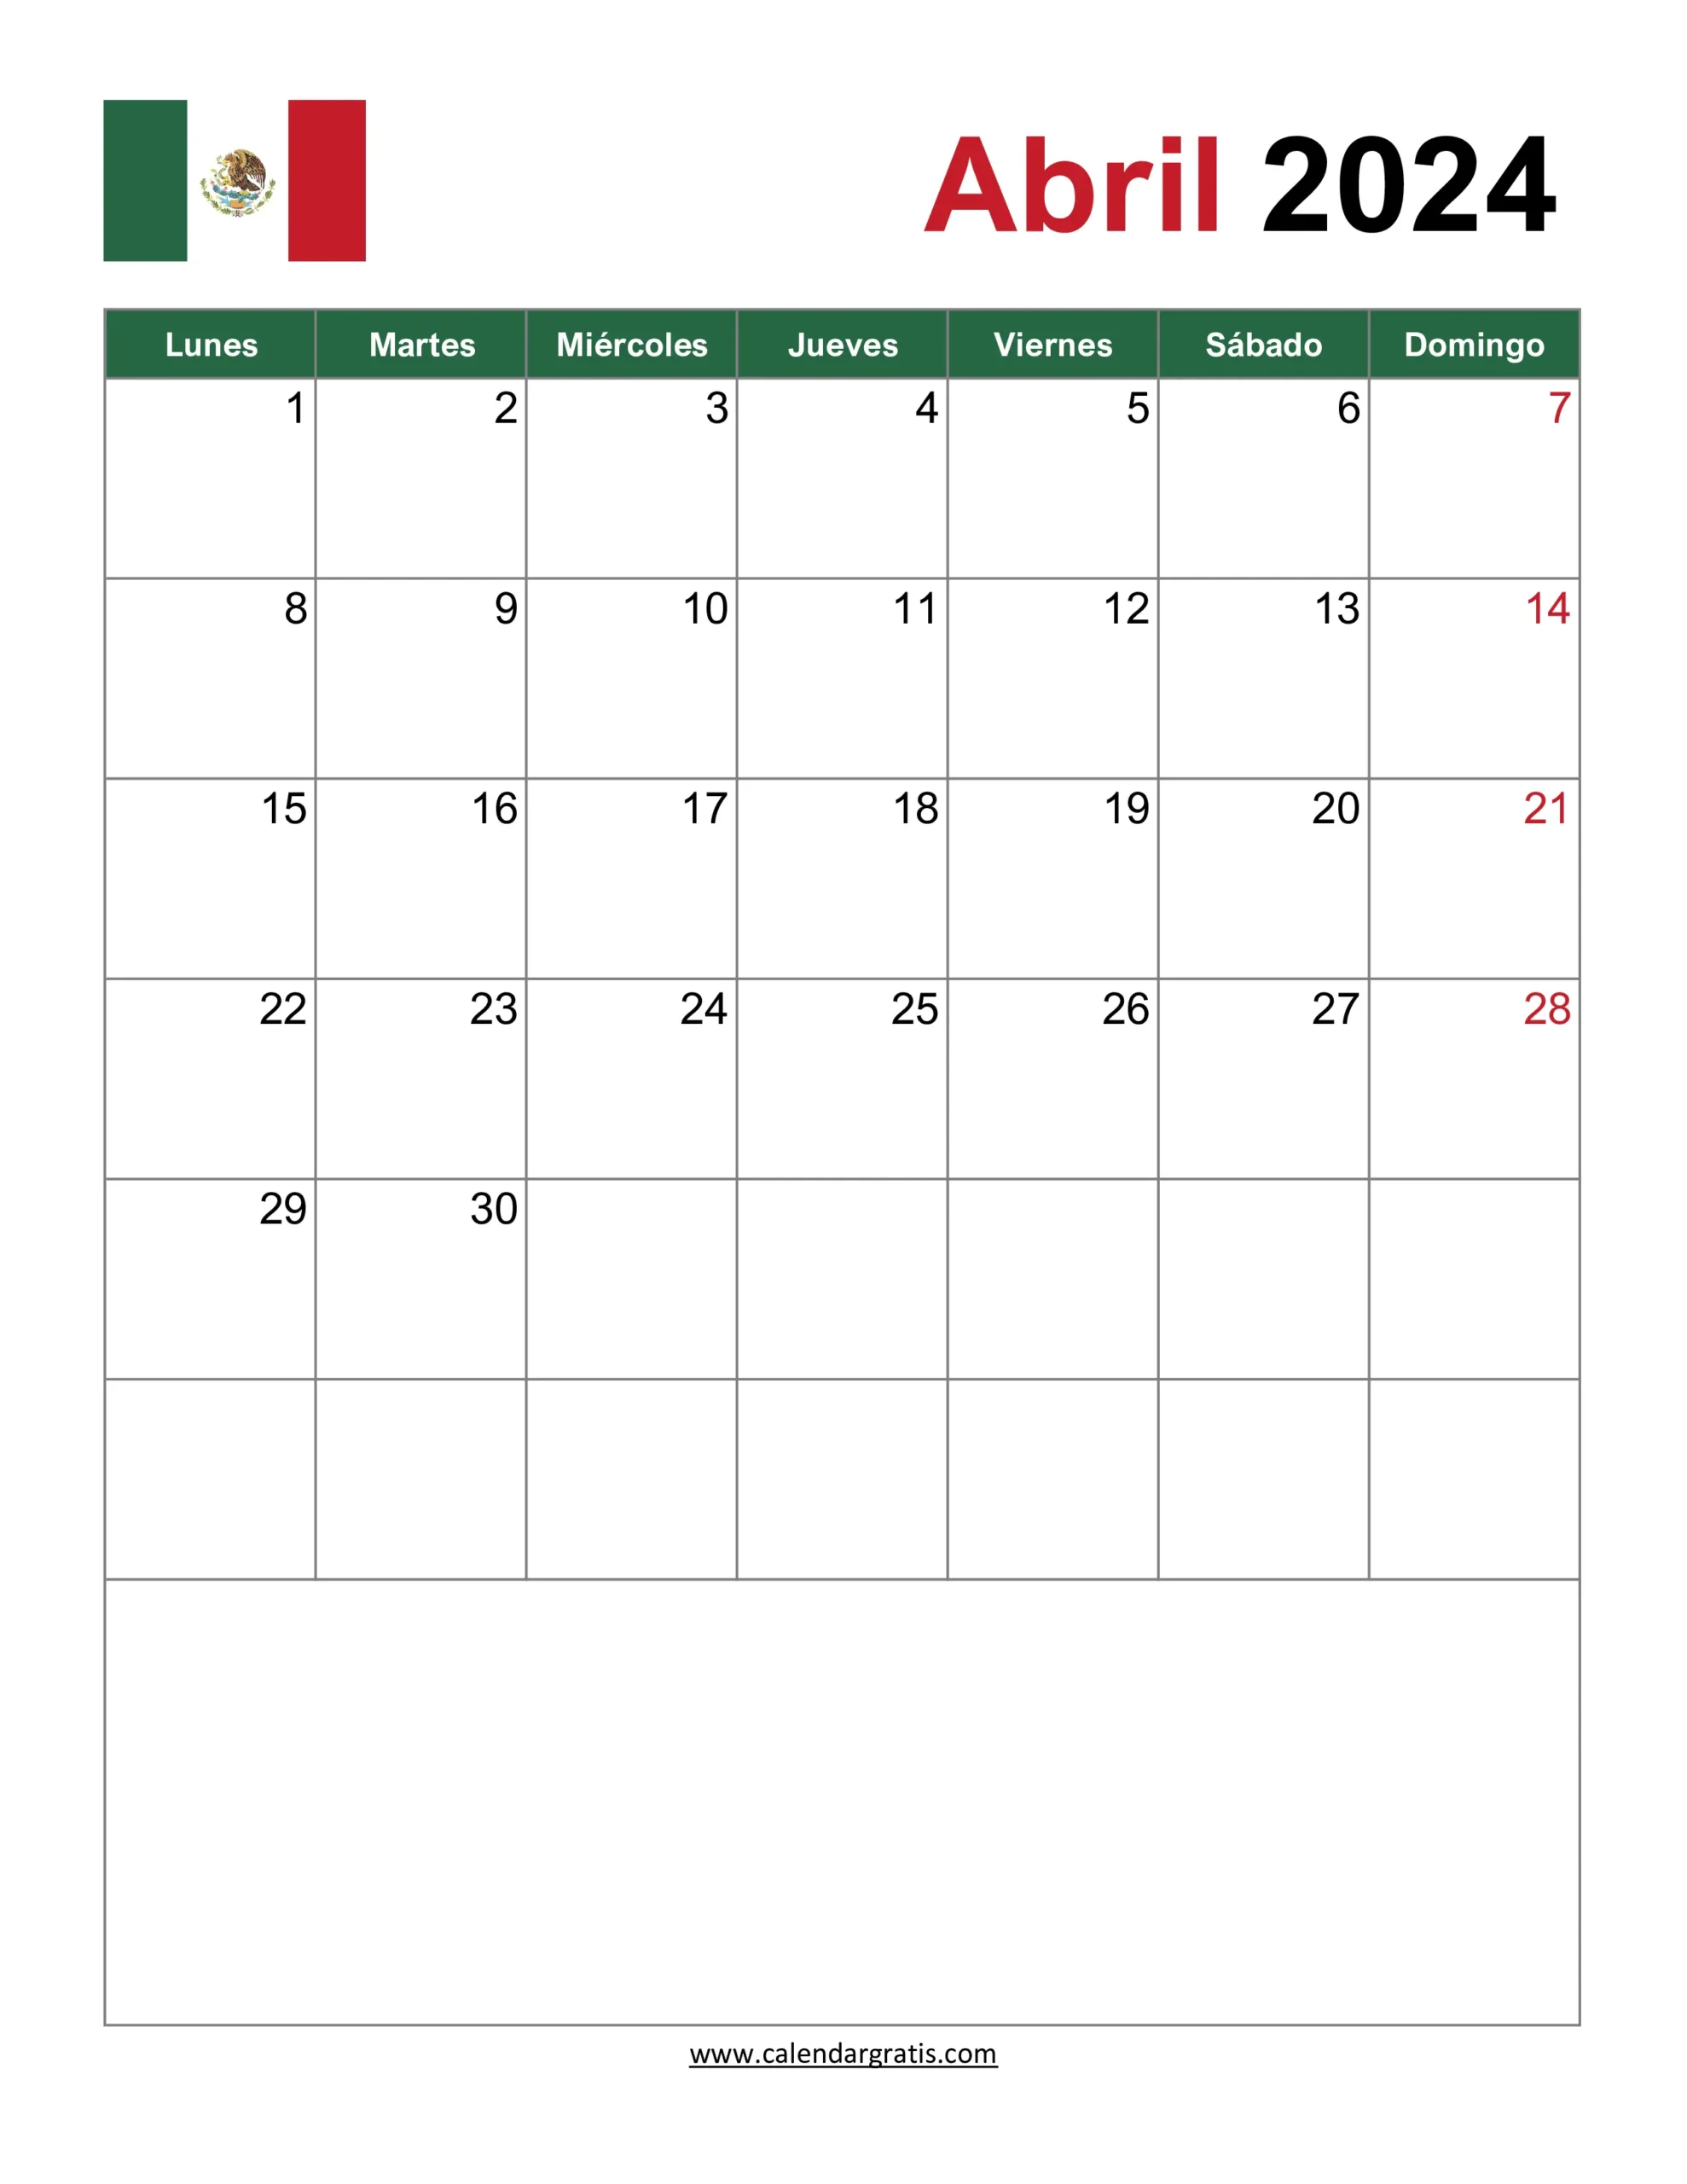 Calendario Abril 2024 para Imprimir con la bandera mexicana en la parte superior, las semanas comienzan el lunes y terminan el domingo.